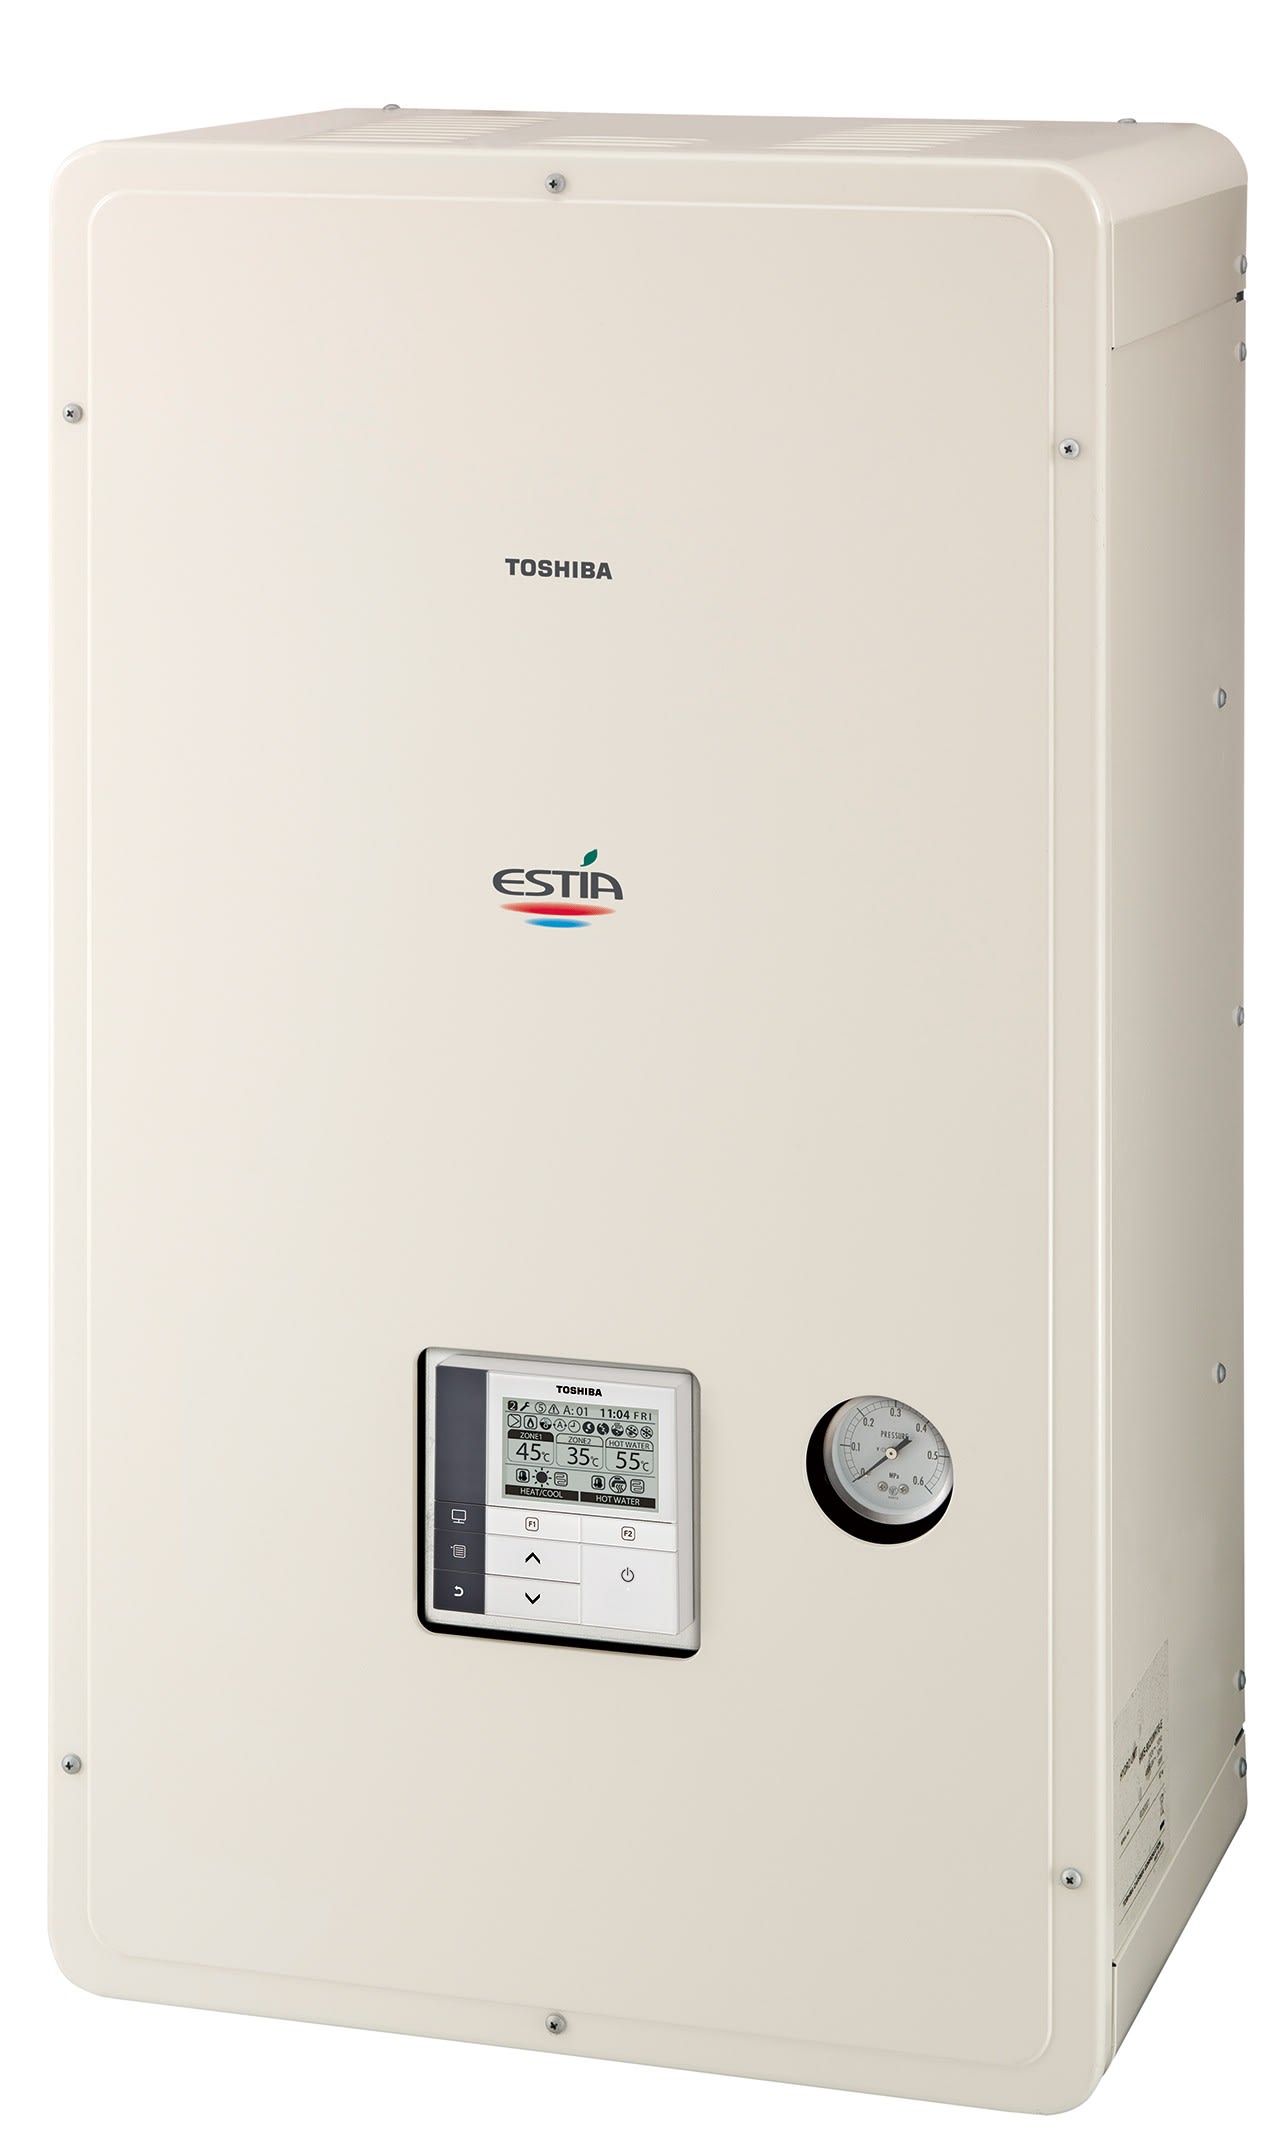 Toshiba Climatisation - Module Hydraulique résistance électrique 6kW